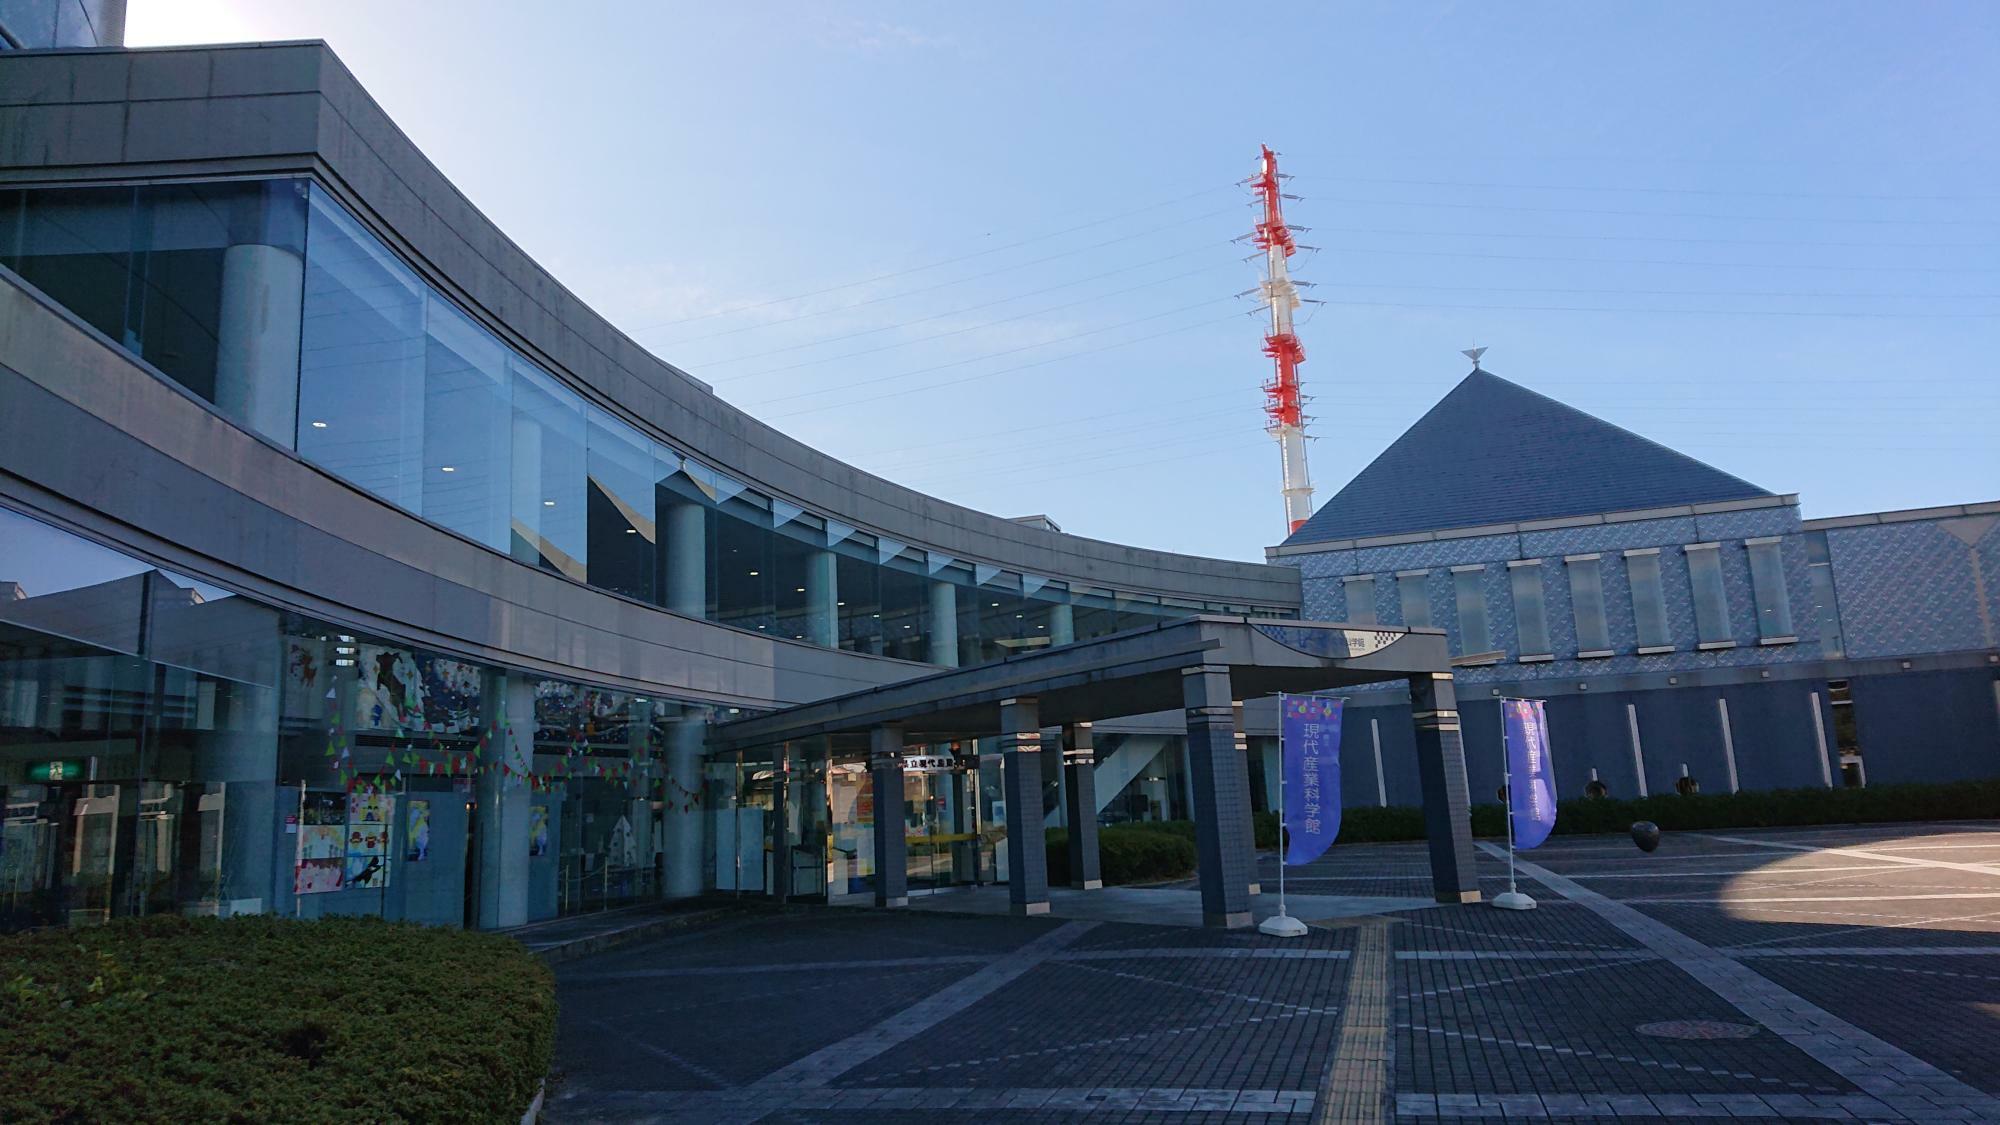 千葉県立現代産業科学館では開館30周年記念イベントも開催。